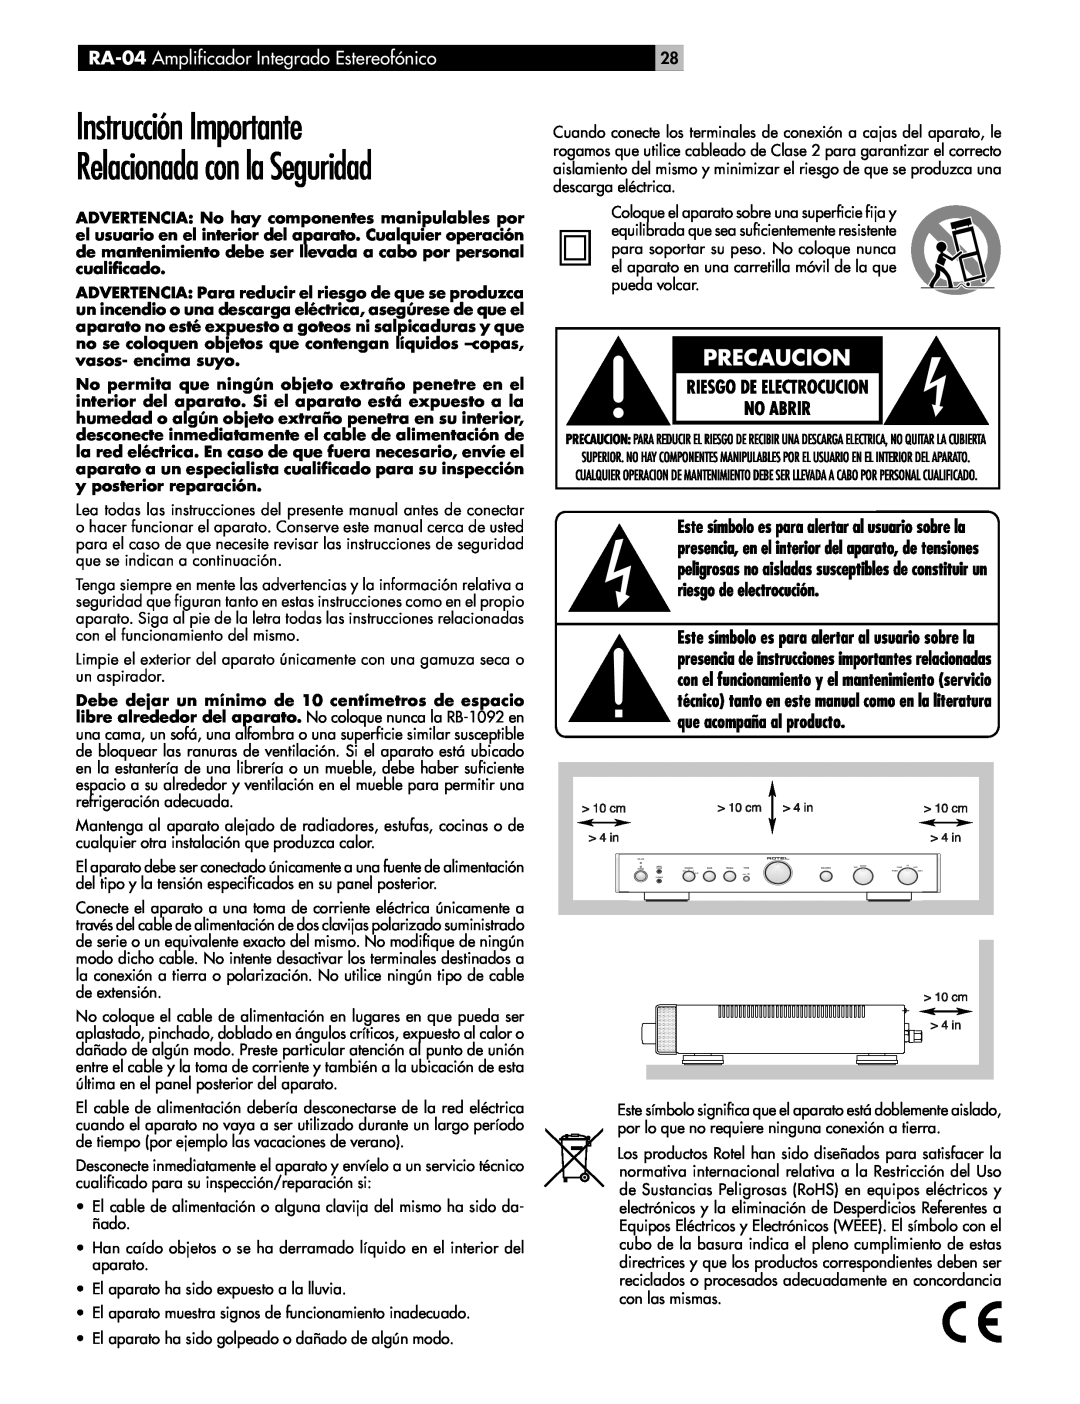 Rotel owner manual Instrucción Importante, Relacionada con la Seguridad, RA-04 Amplificador Integrado Estereofónico 